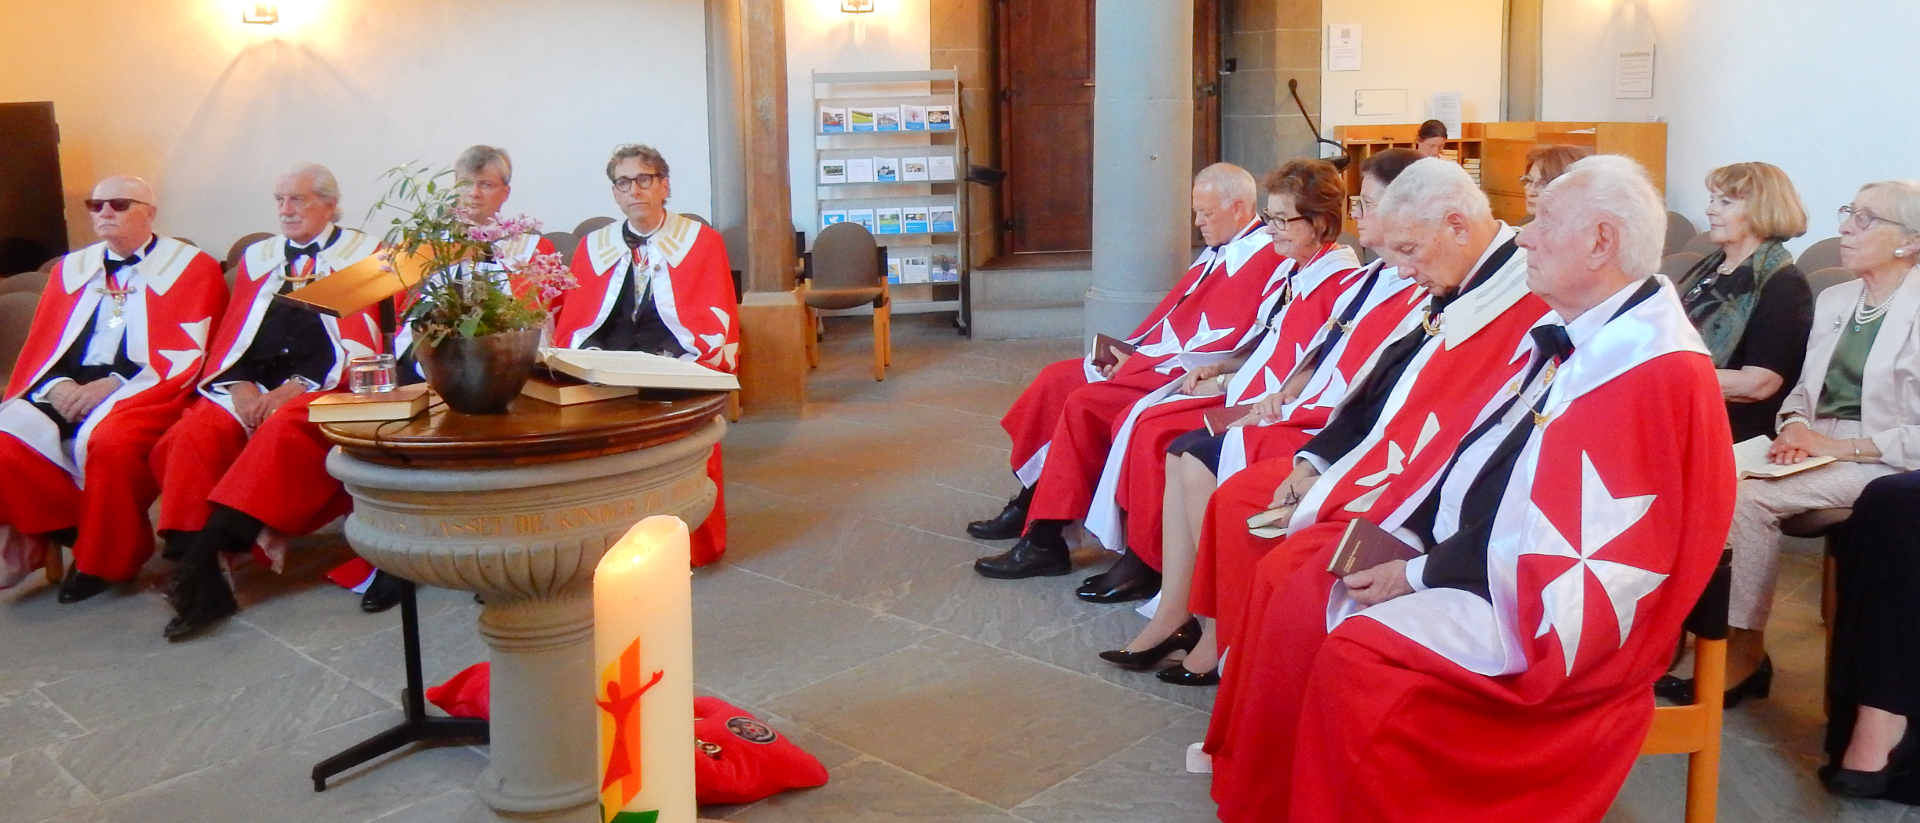 Les membres de l'"Order of Saint John of Jerusalem, Knights Hospitaller (Malta)" réunis à l'église de Greifensee (ZH) | DR